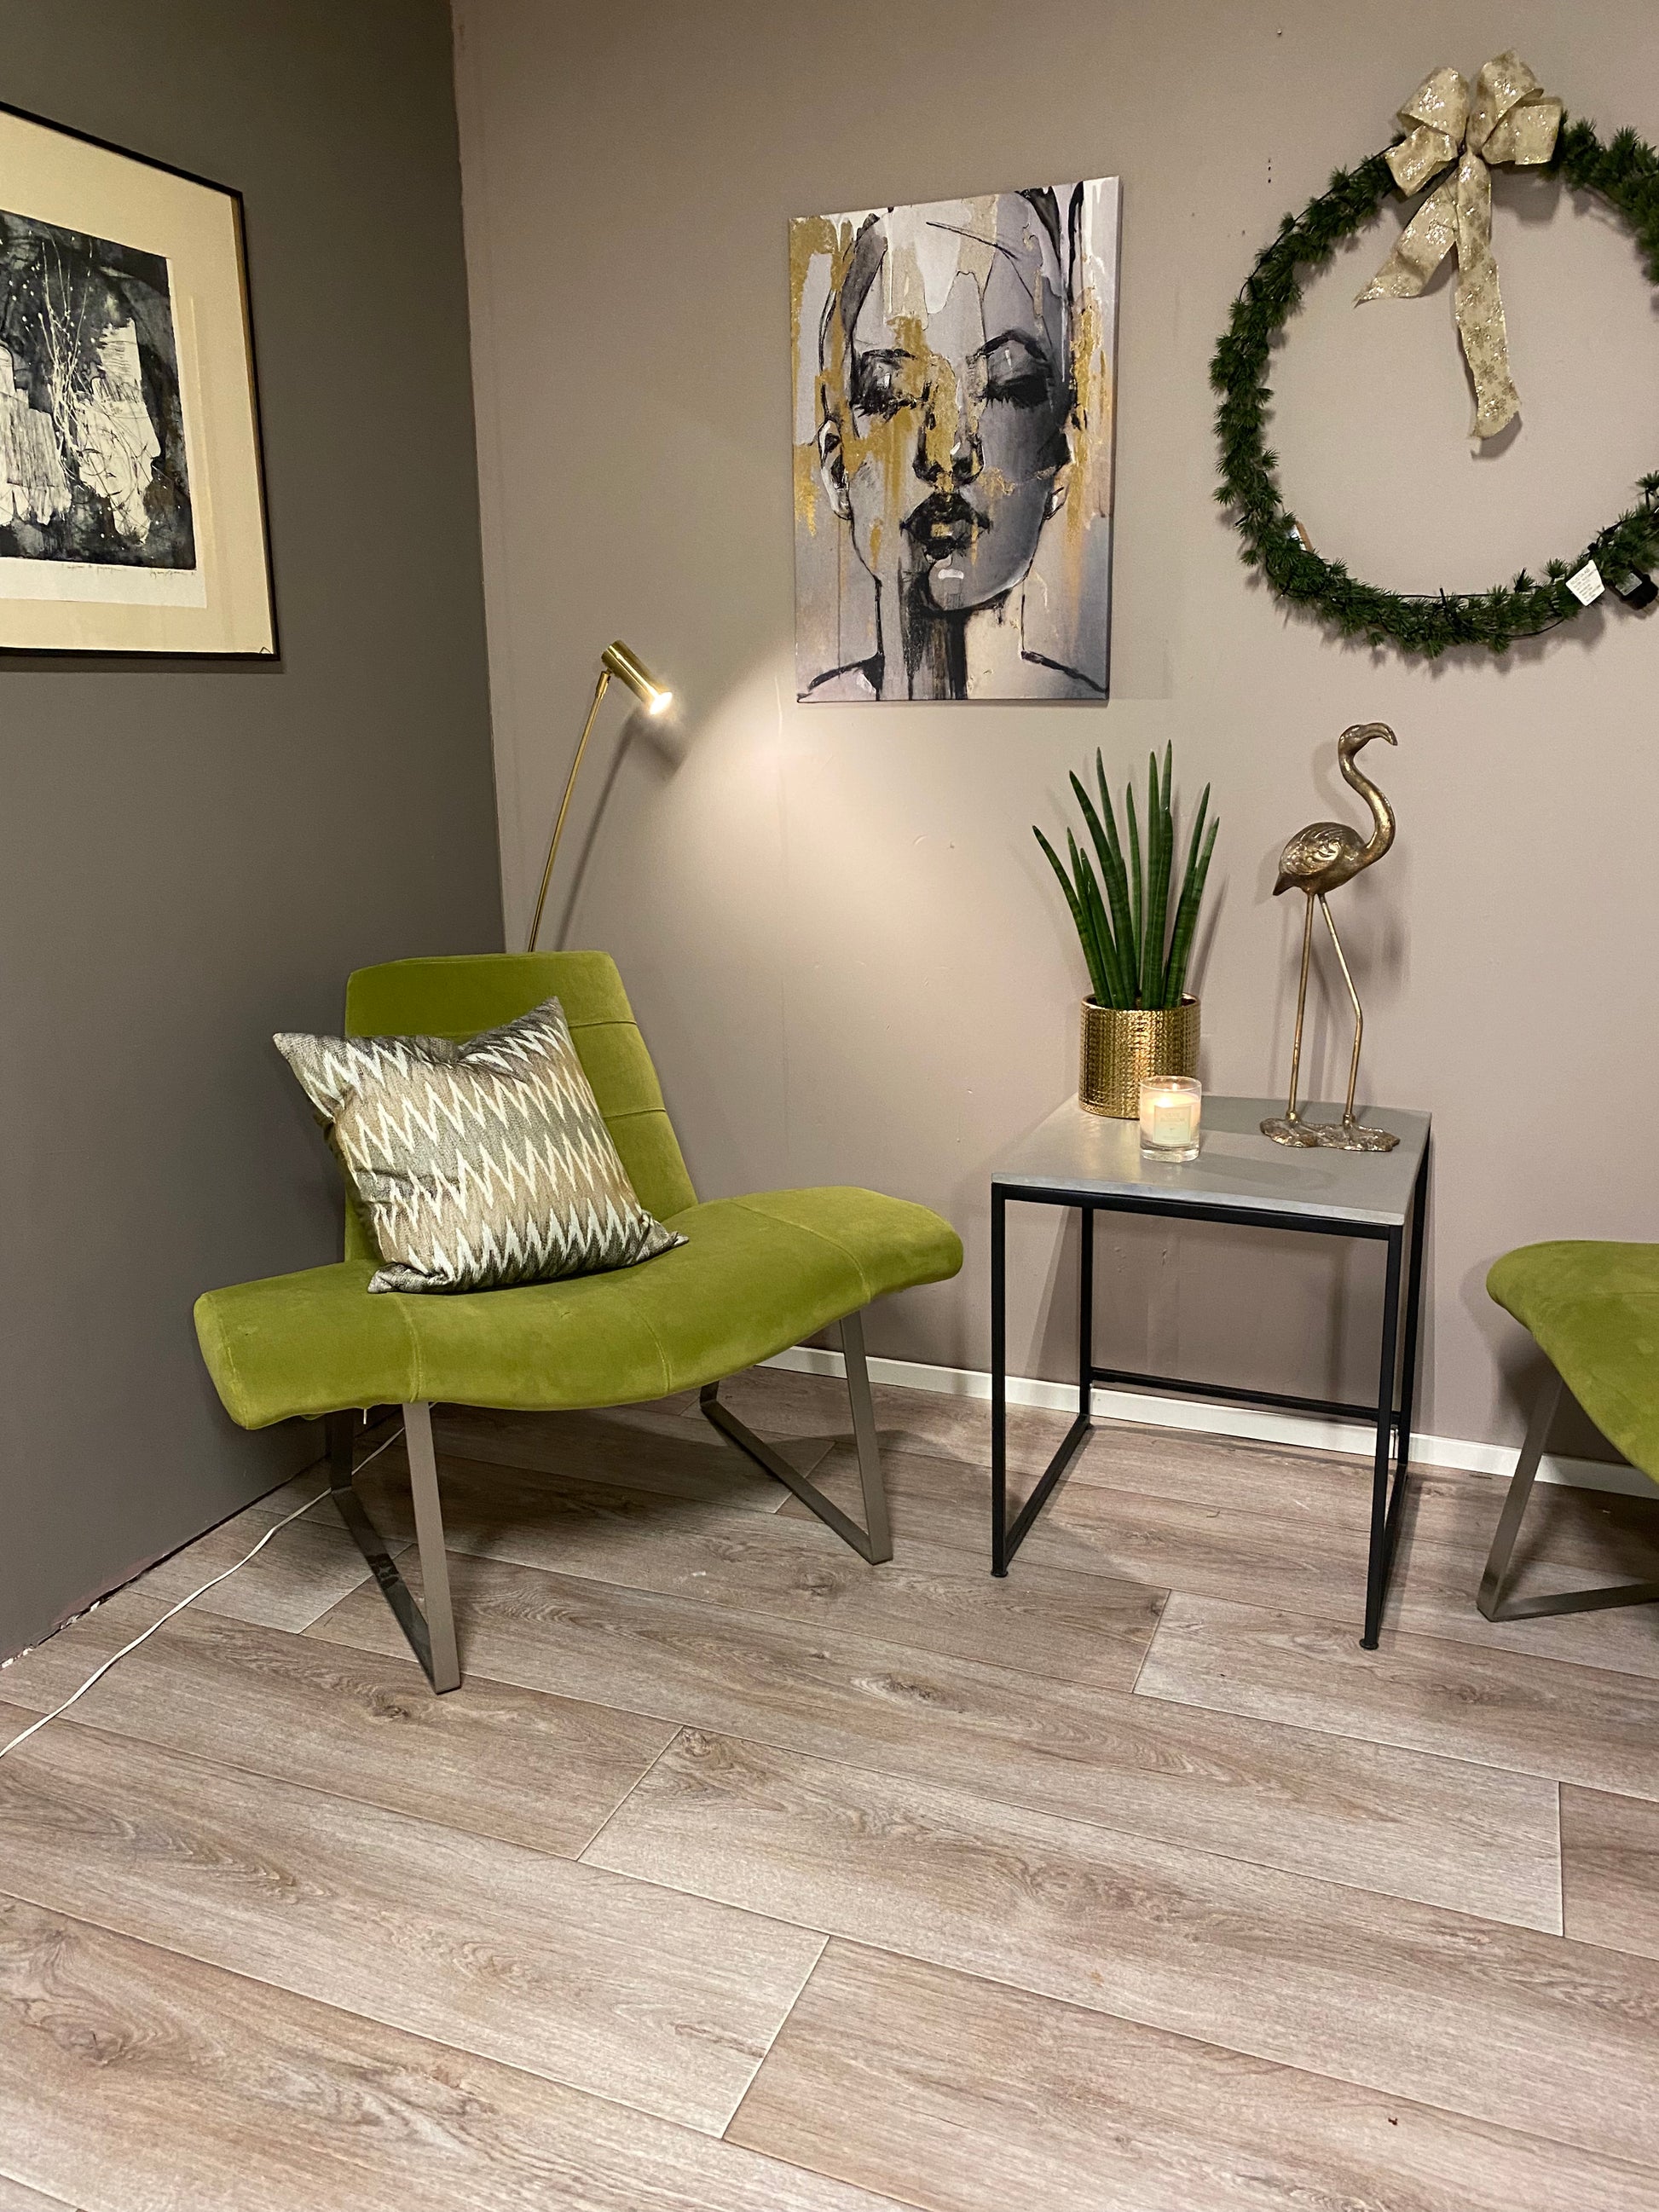 Italiensk design! Pedrali loungestoler - Kvalitetsbrukt Møbel fra Hjembruket på Hjembruket